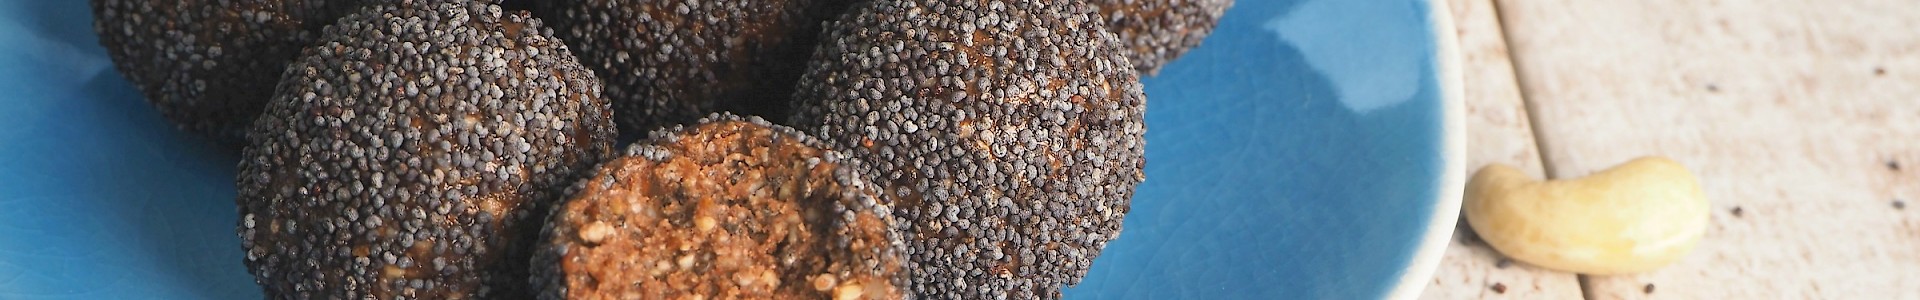 Choc-orange Poppy Seed Balls